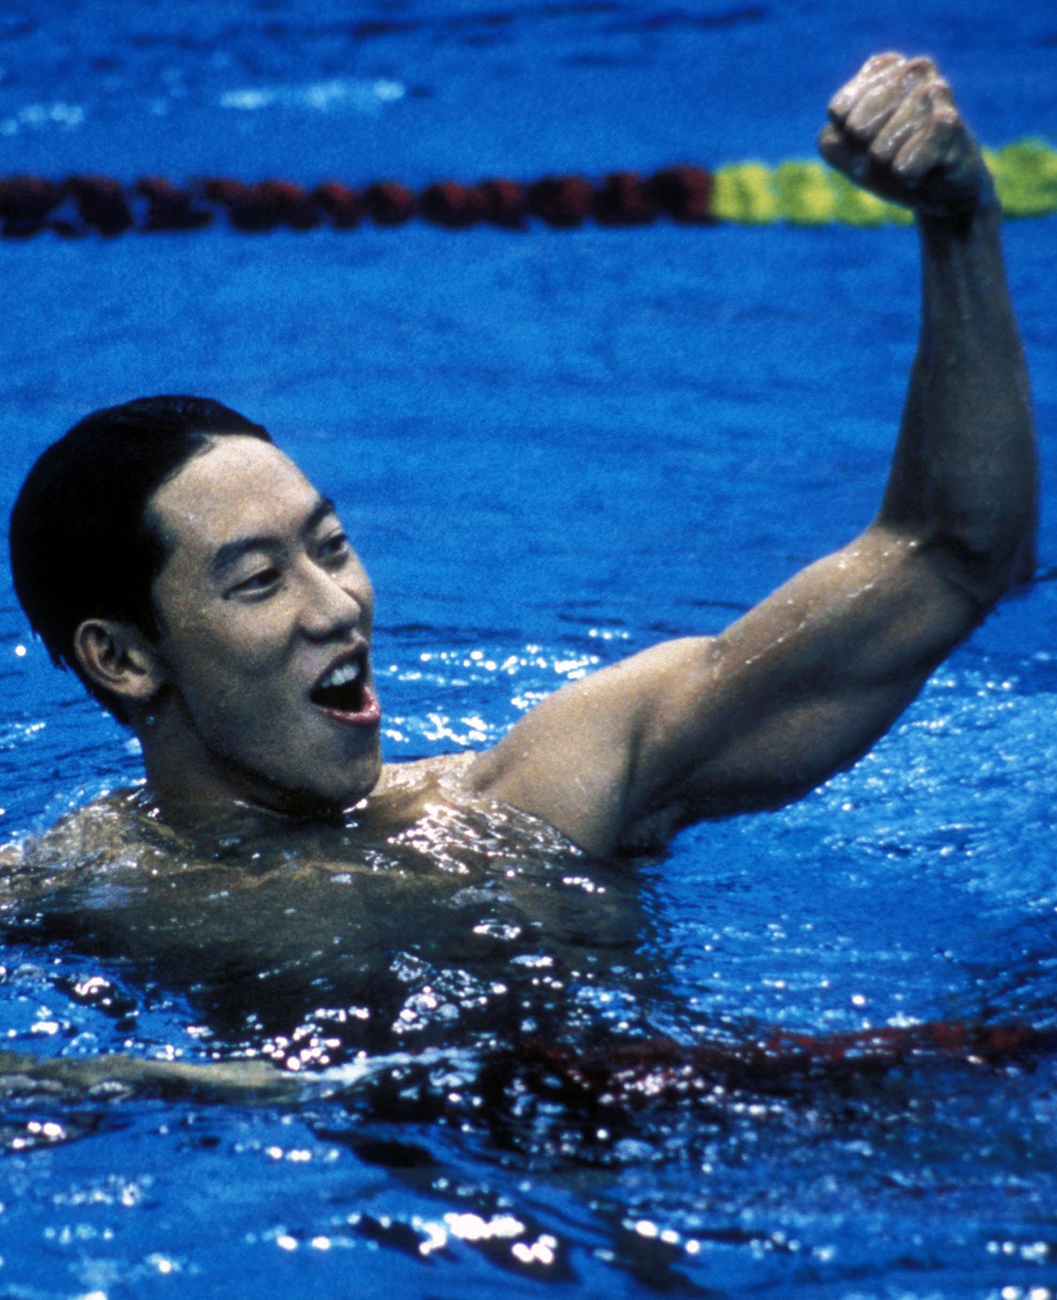 Swimmer Daichi Suzuki